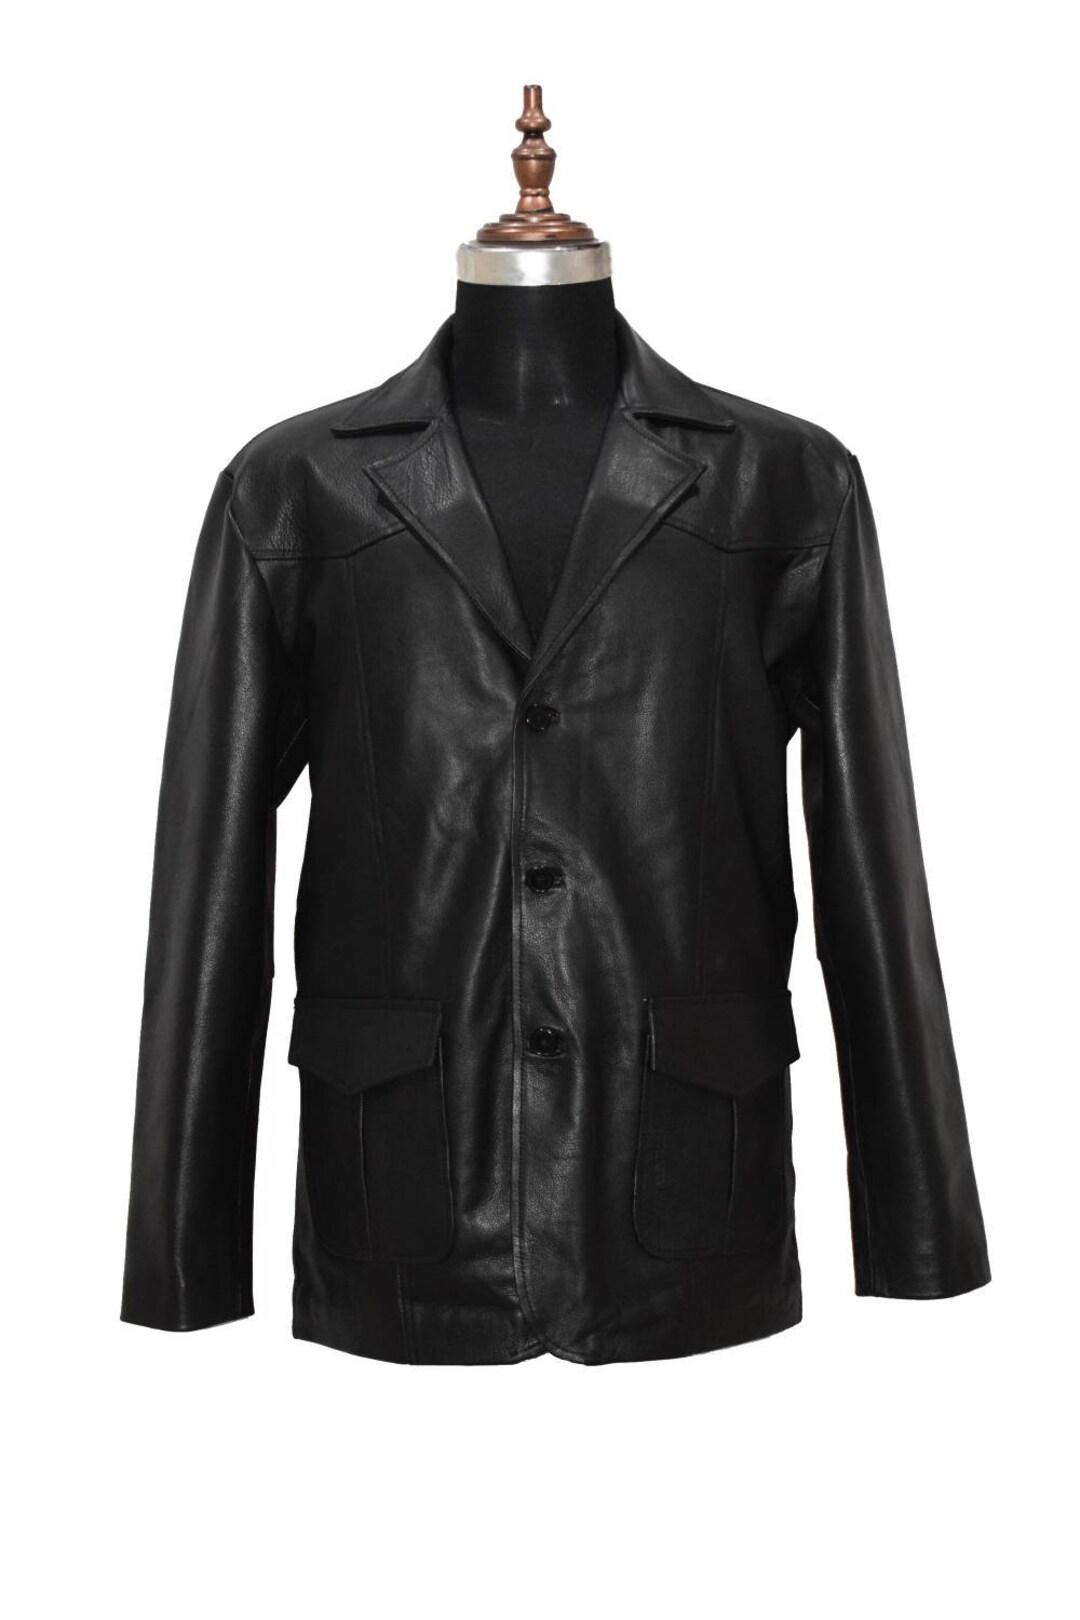 Vintage Men Black Leather Coat Real Cow Hide Leather Jacket - Etsy